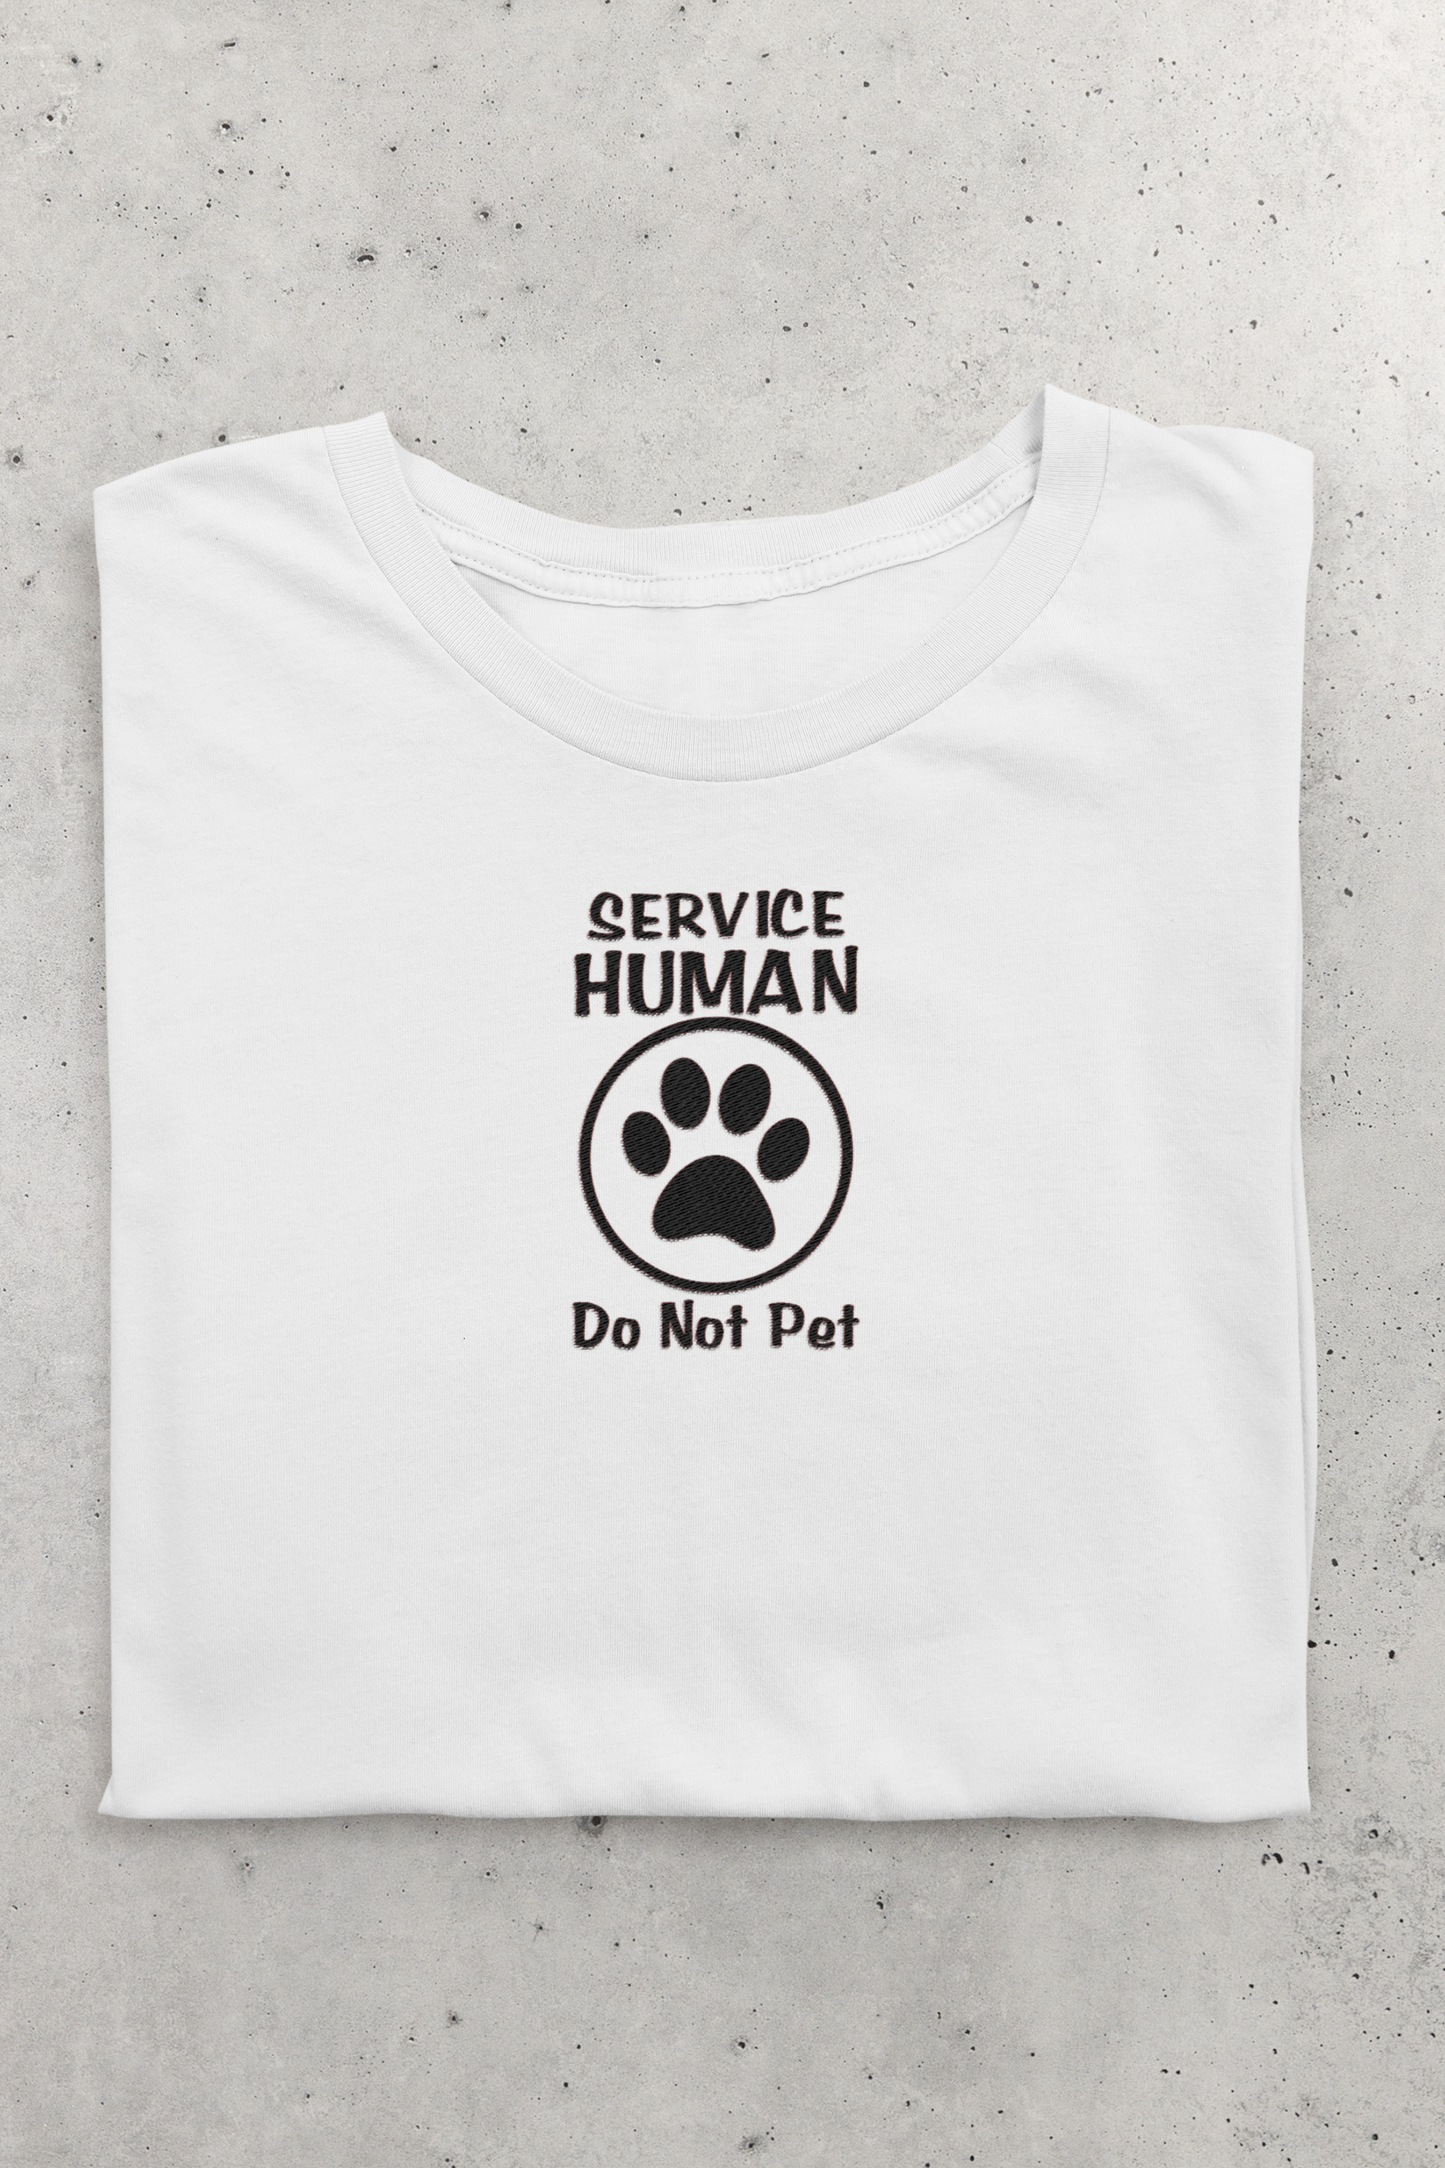 Service Human - Do Not Pet crew neck